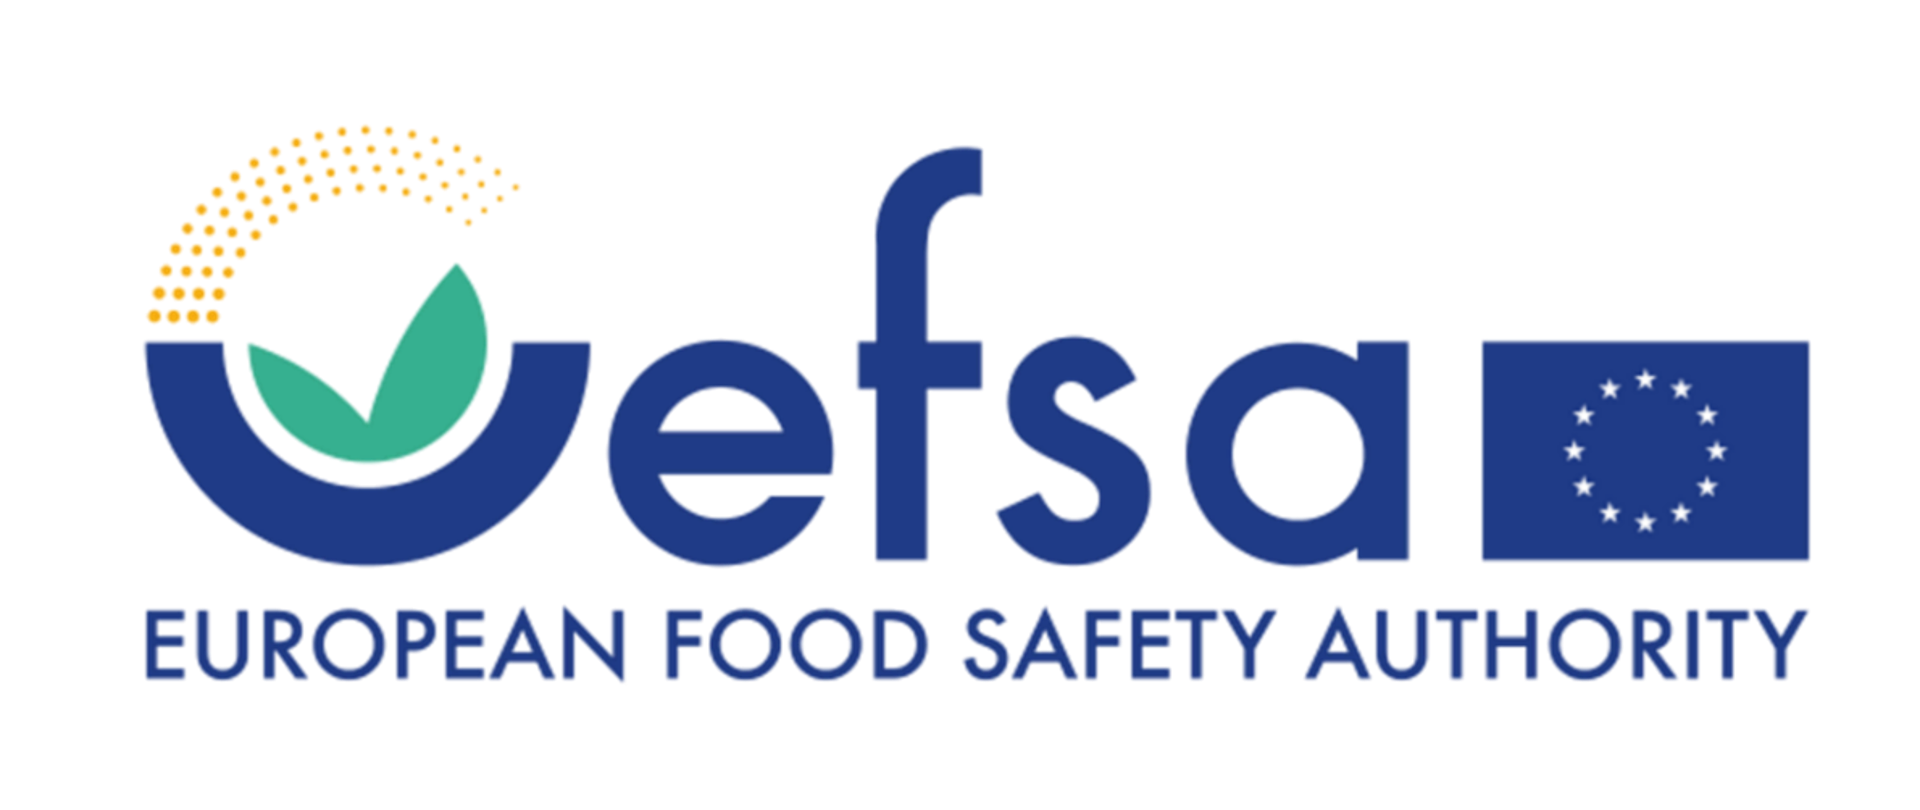 Rusza III edycja kampanii EFSA „Wybieraj bezpieczną żywność” #EUChooseSafeFood